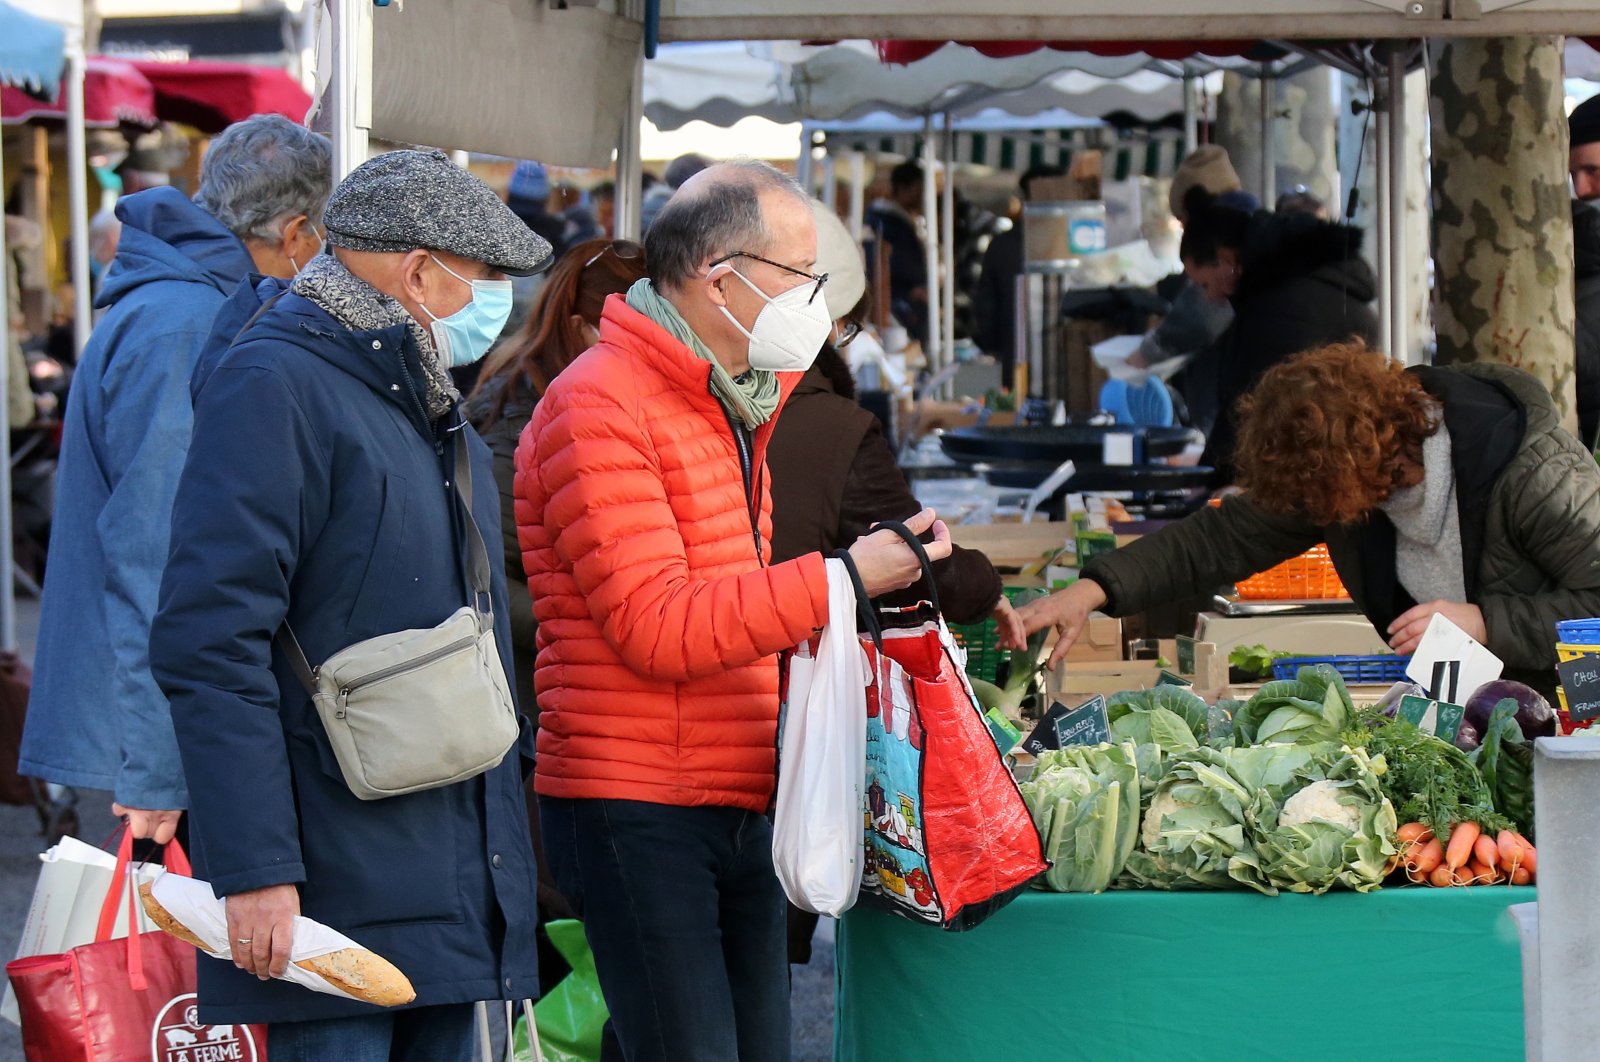 People shop at a farmers market in Saint Jean de Luz, southwestern France, Jan. 14, 2022. (AP Photo)